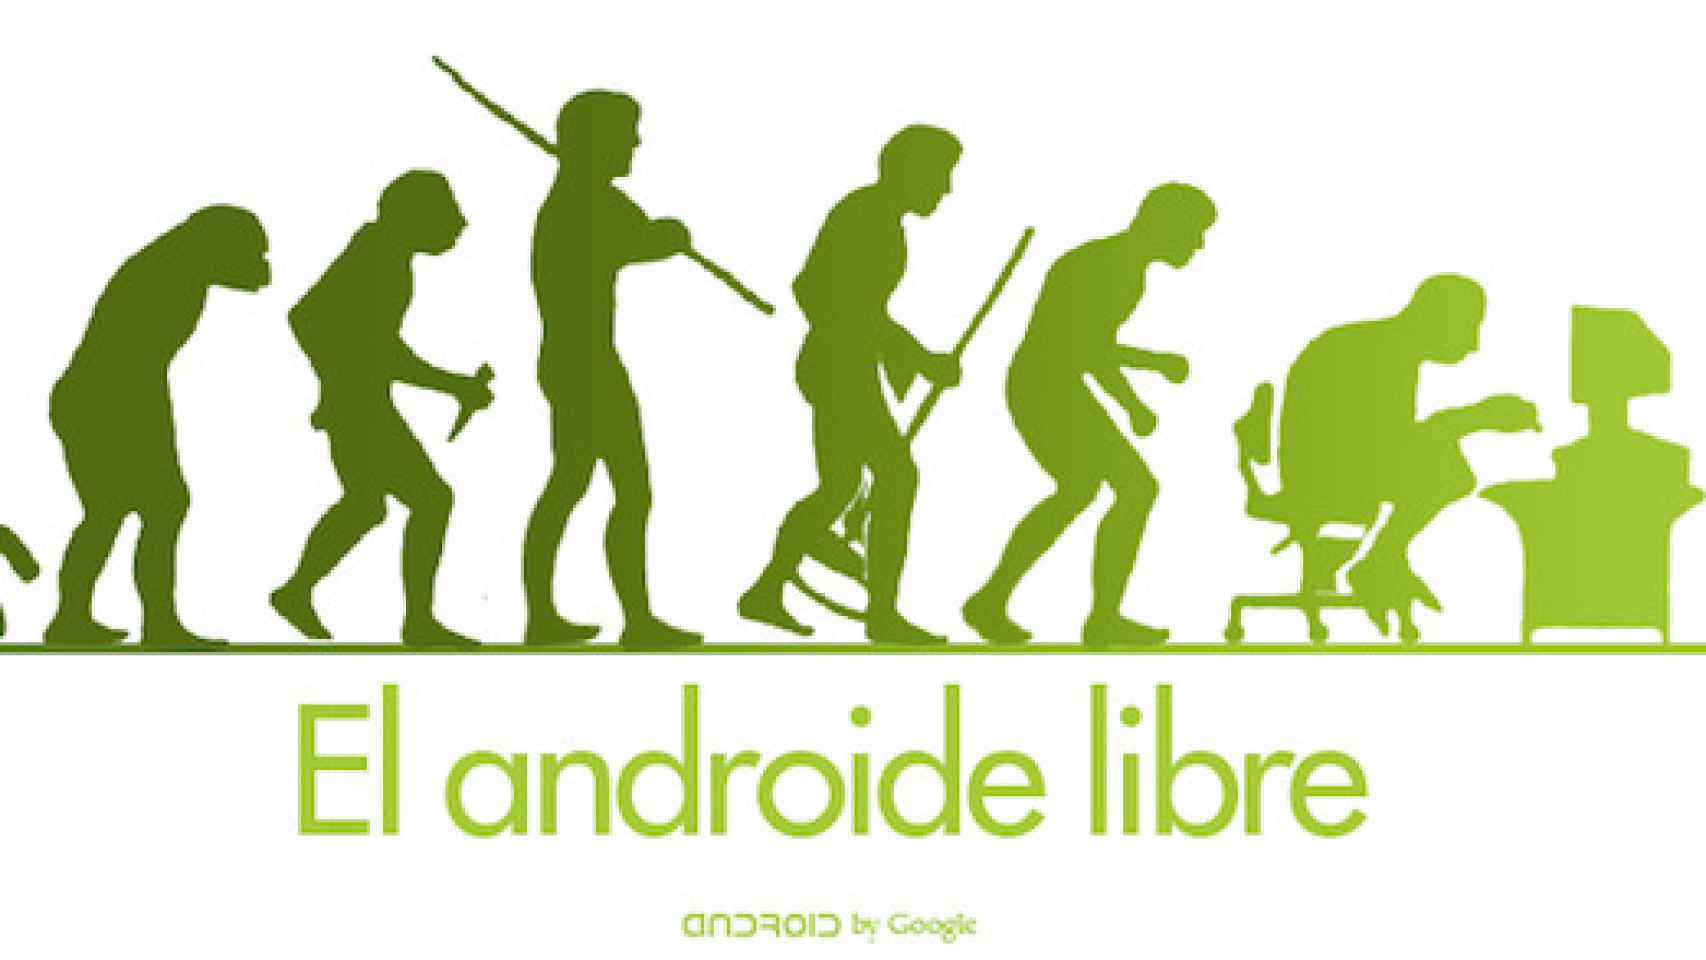 Android no son sólo teléfonos, Android es evolución y diversidad